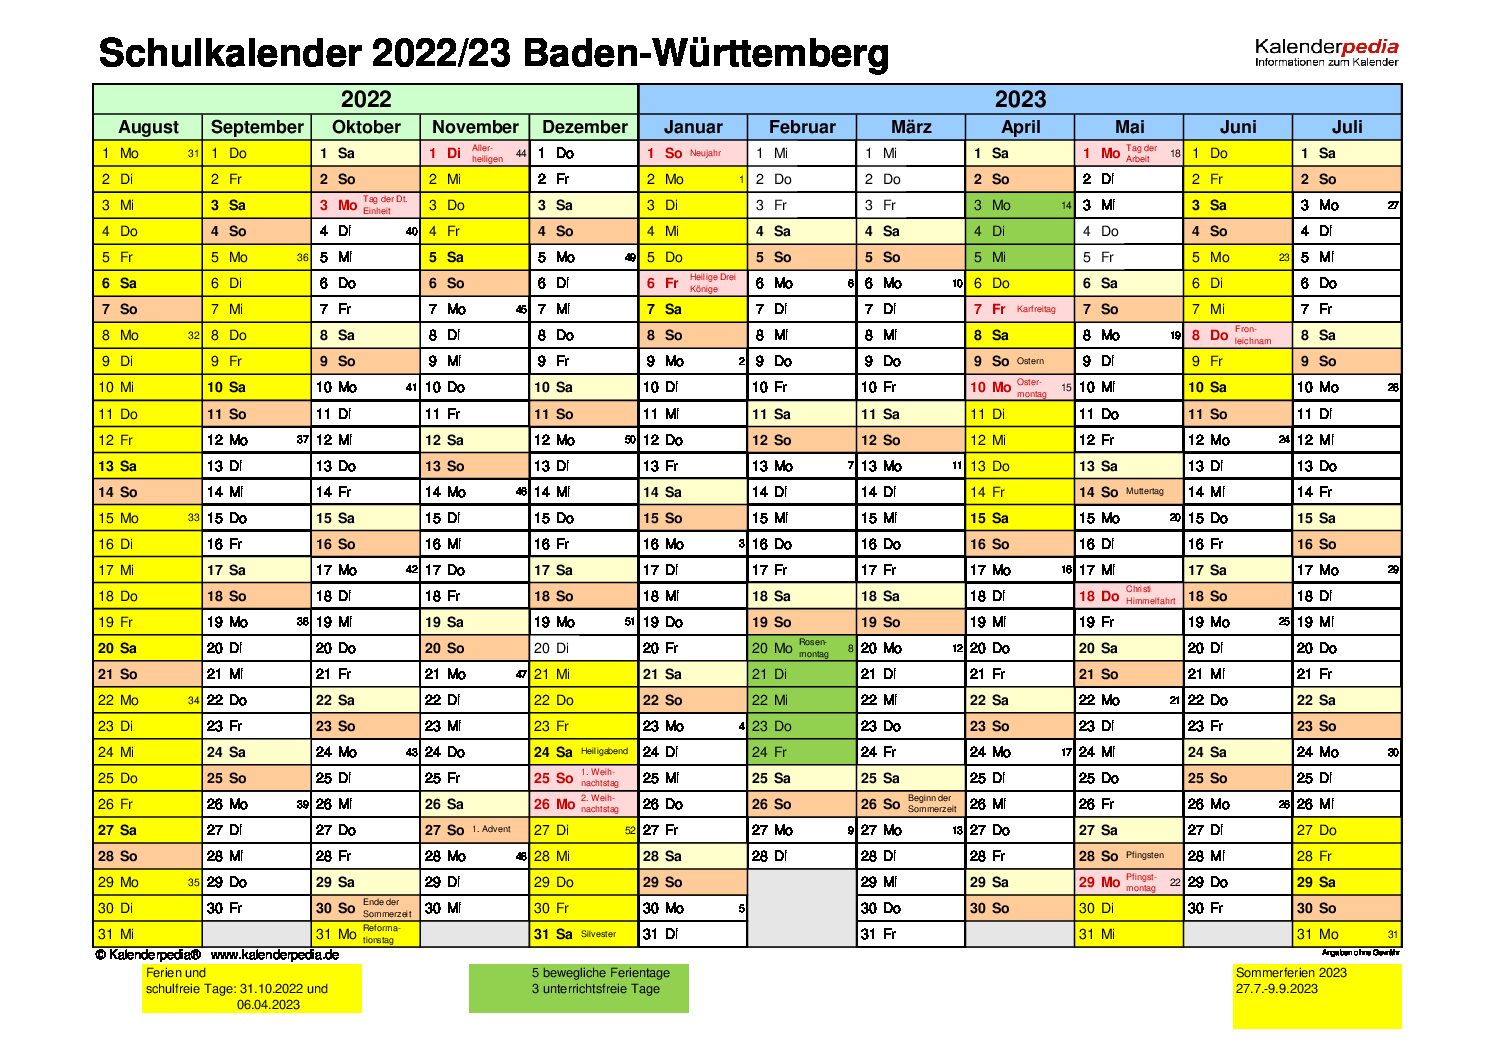 Kalender mit den markierten Ferienplan für Baden-Württemberg.